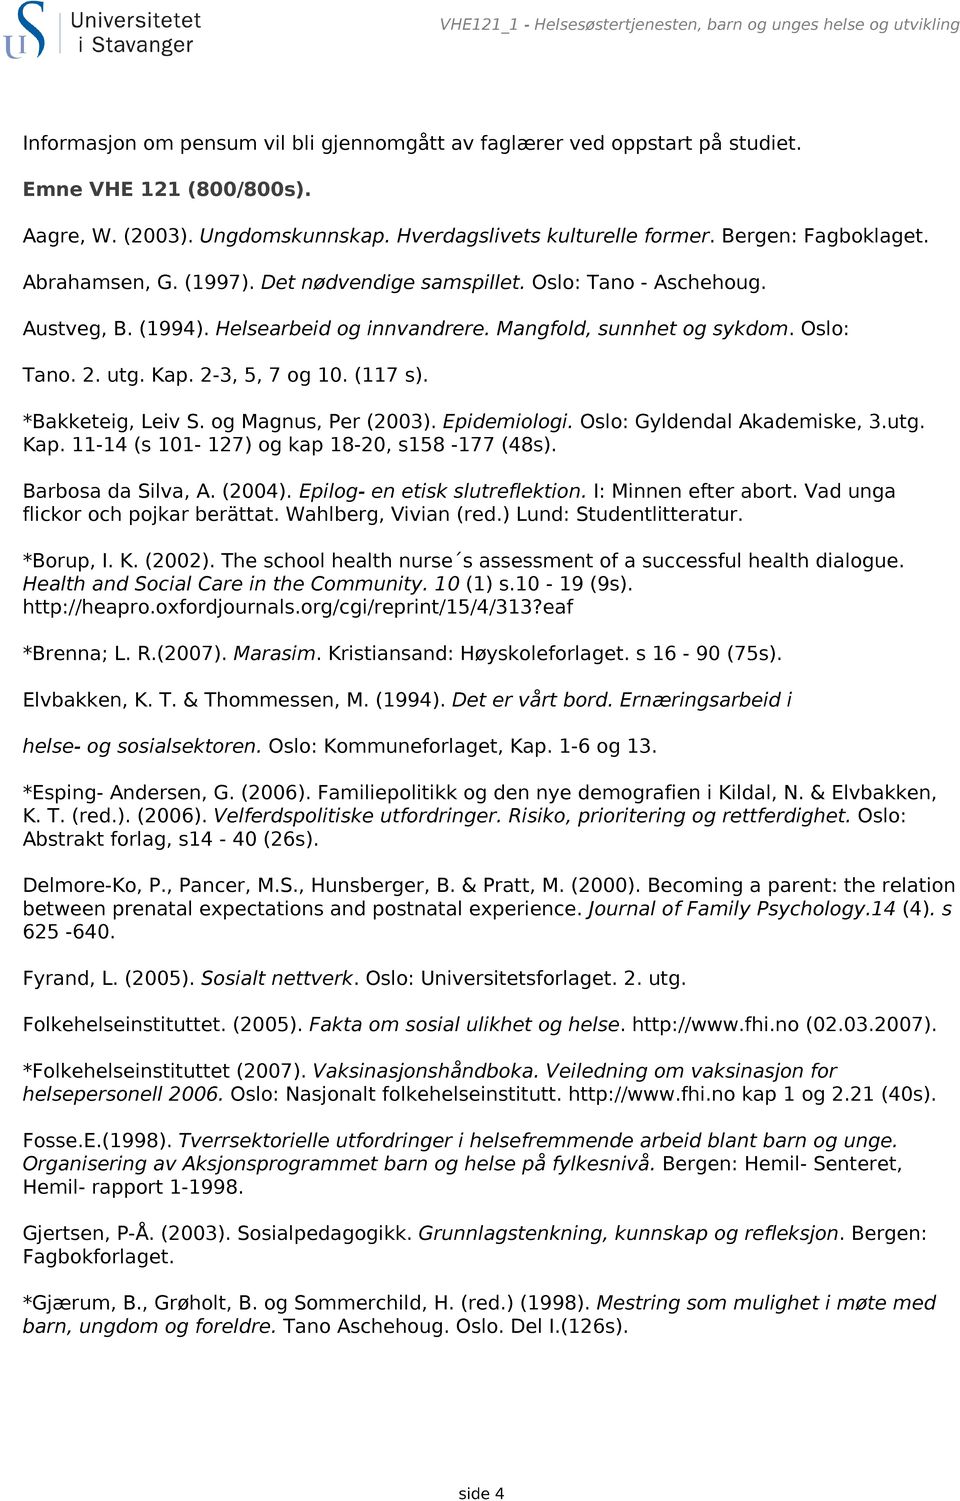 Mangfold, sunnhet og sykdom. Oslo: Tano. 2. utg. Kap. 2-3, 5, 7 og 10. (117 s). *Bakketeig, Leiv S. og Magnus, Per (2003). Epidemiologi. Oslo: Gyldendal Akademiske, 3.utg. Kap. 11-14 (s 101-127) og kap 18-20, s158-177 (48s).